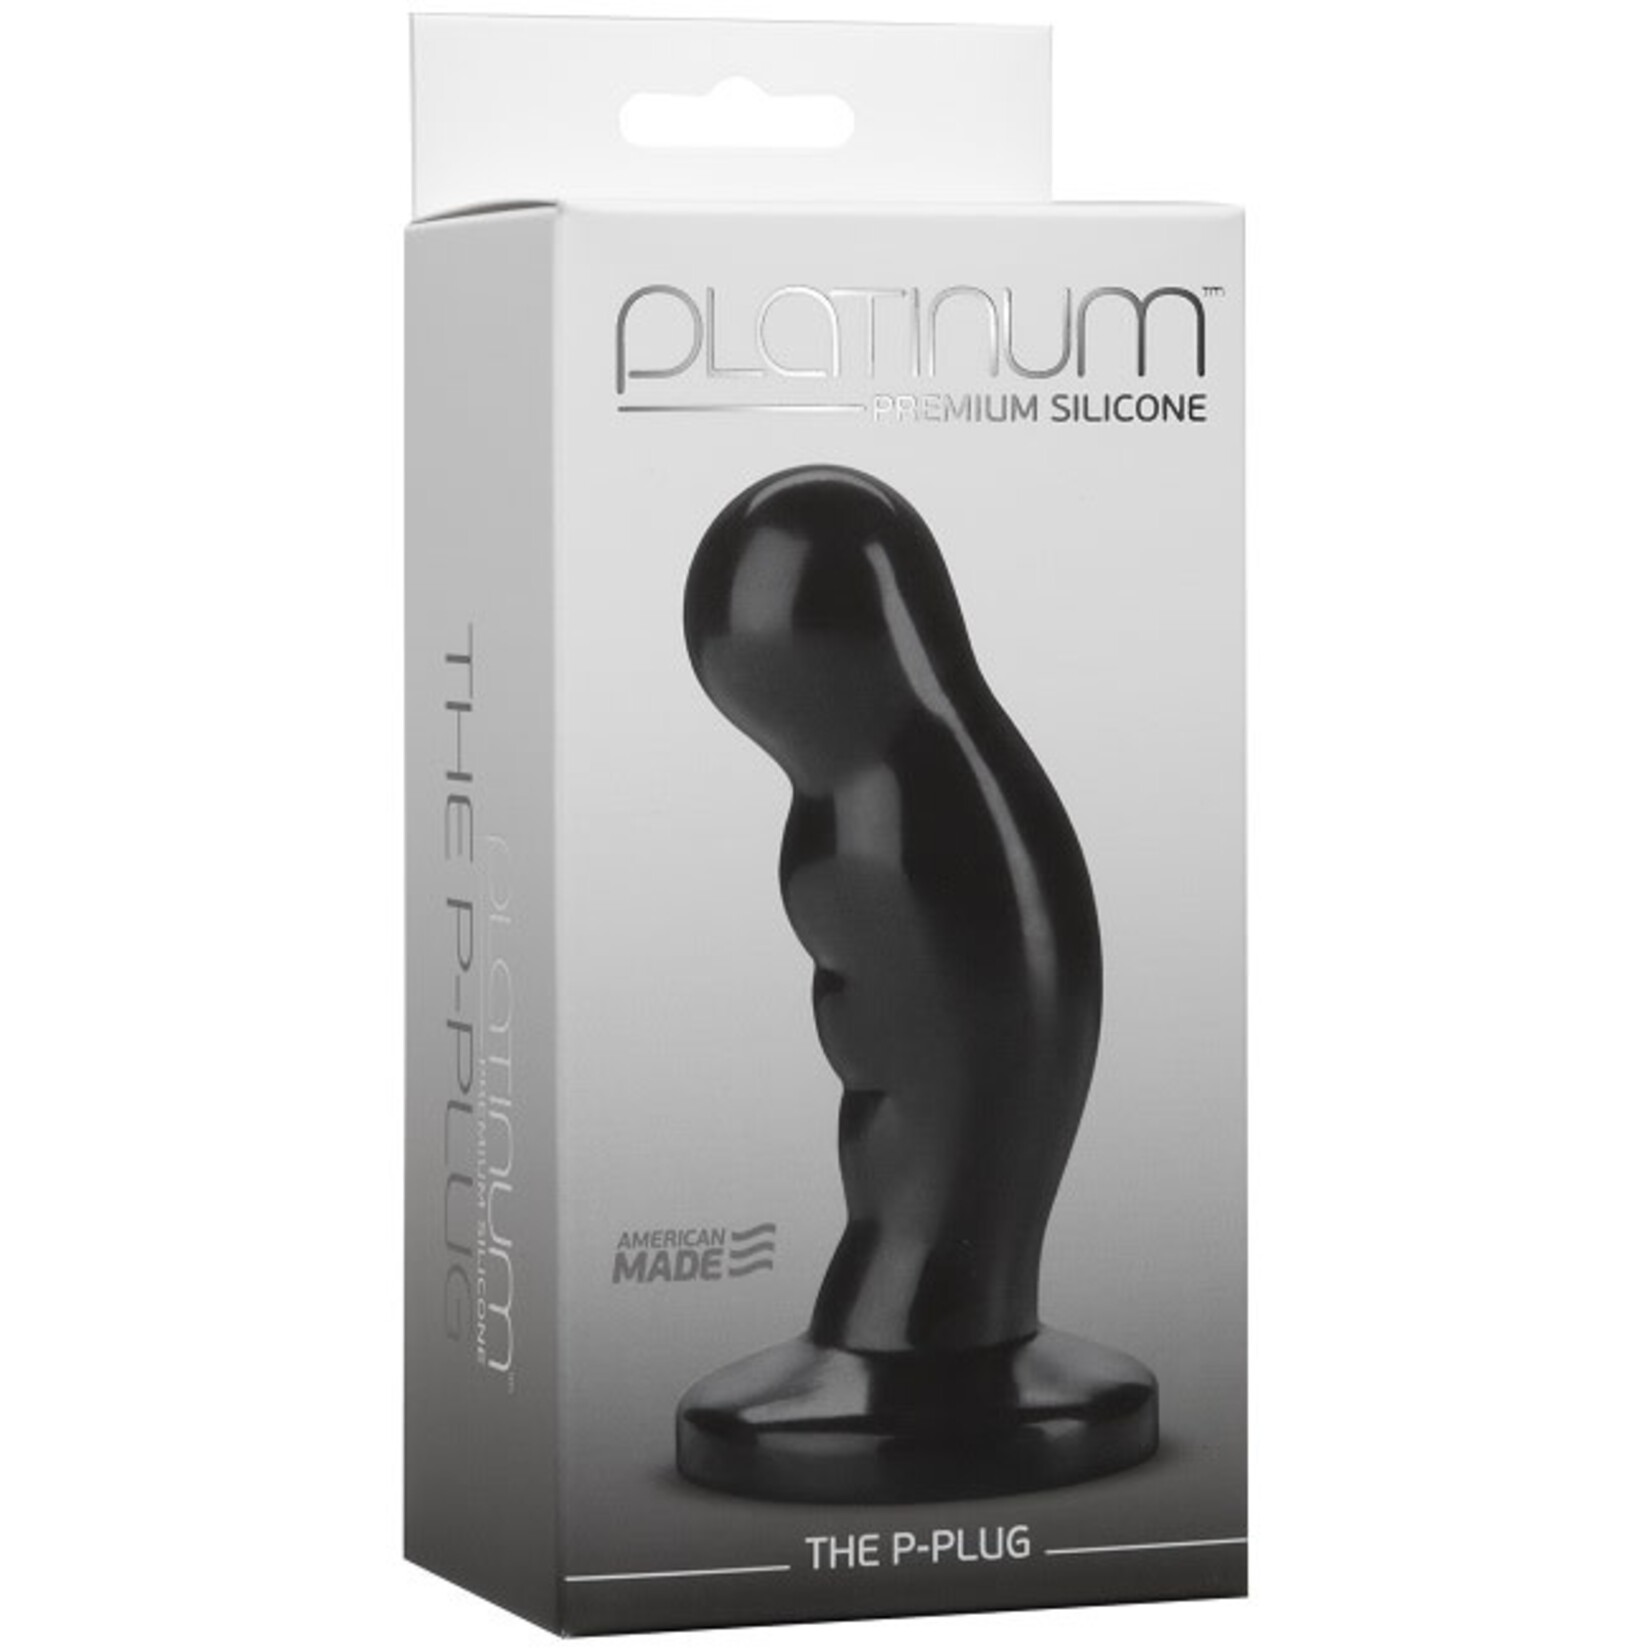 Doc Johnson Platinum Premium Silicone - The P-Plug